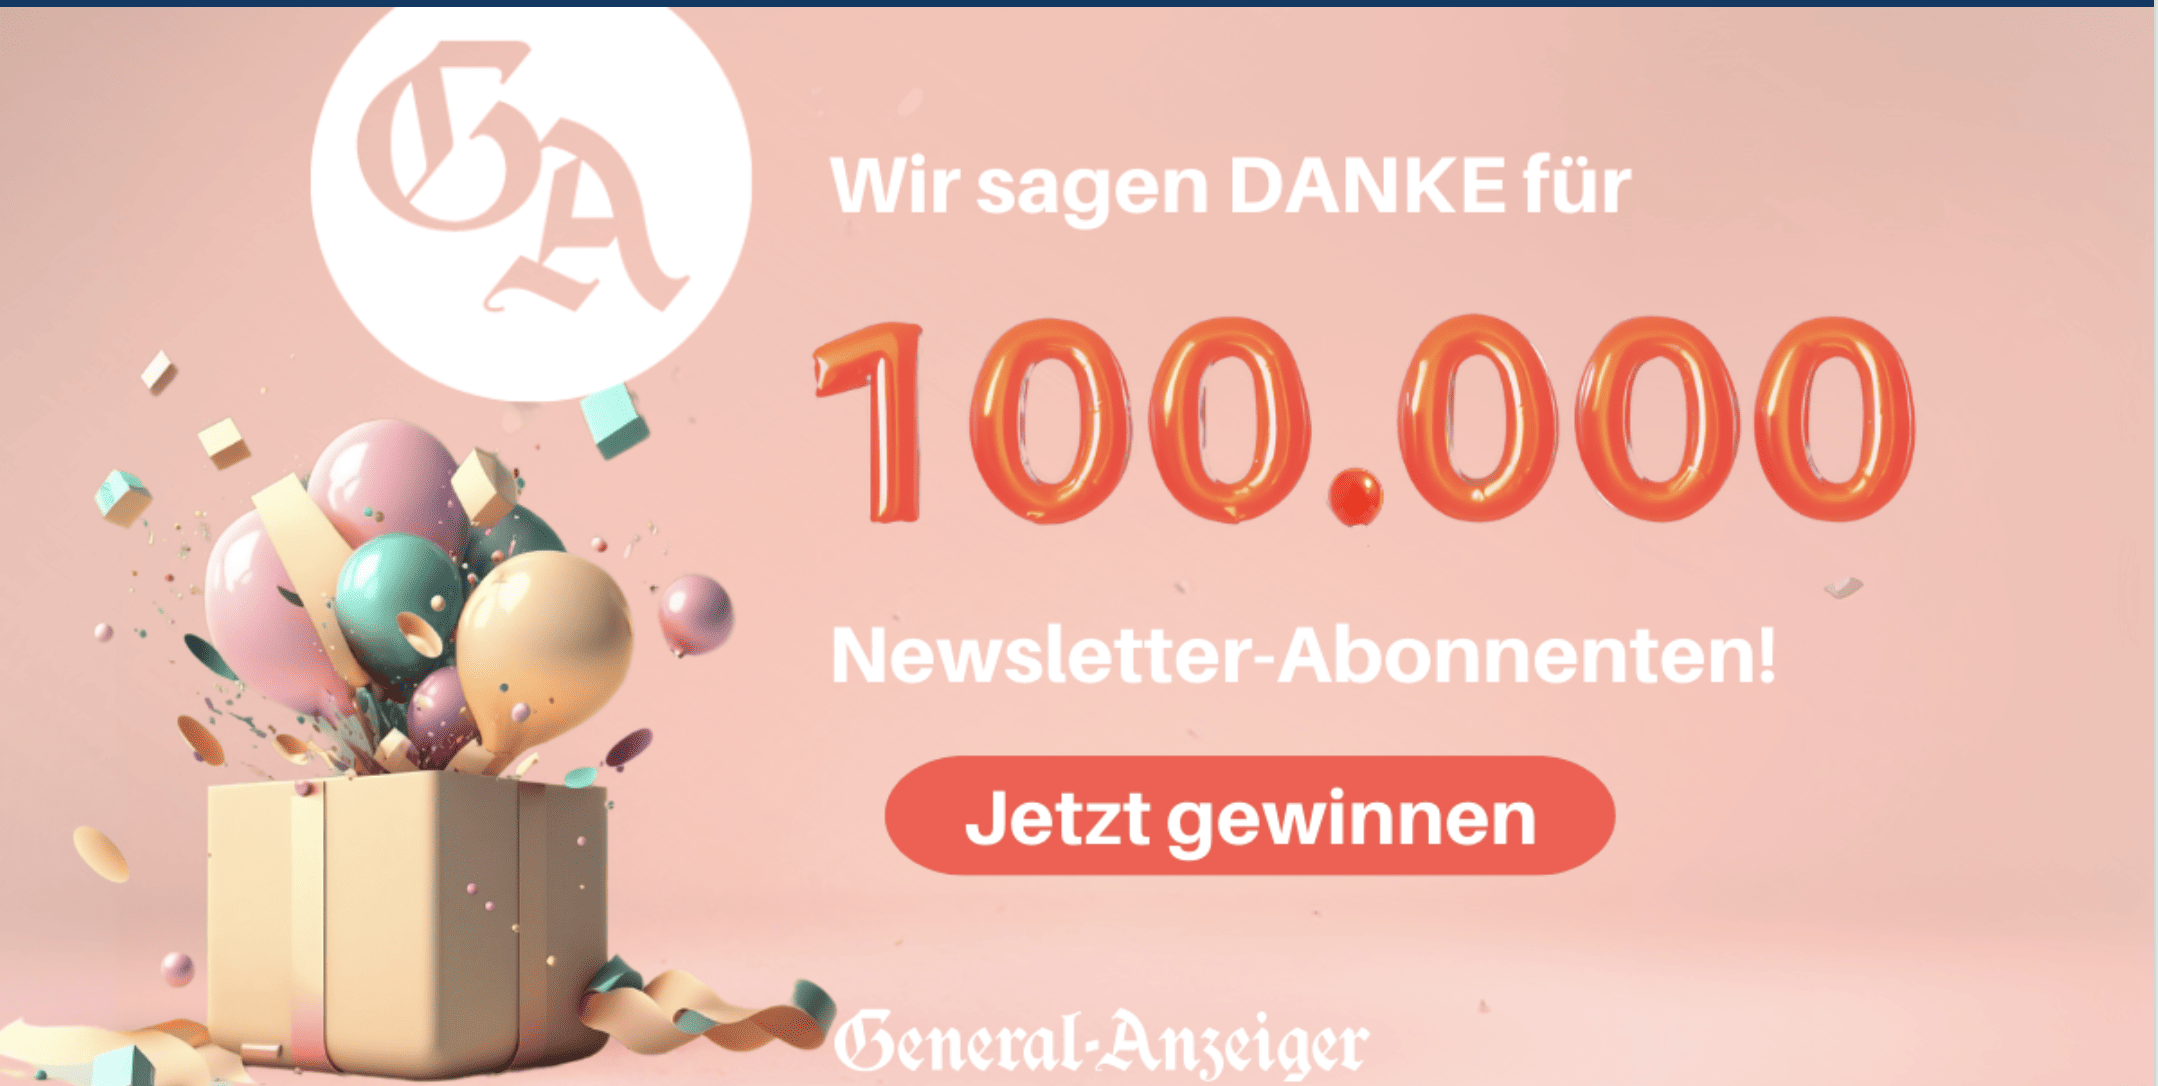 case_Der General-Anzeiger feiert 100.000 Newsletter-Abonnenten